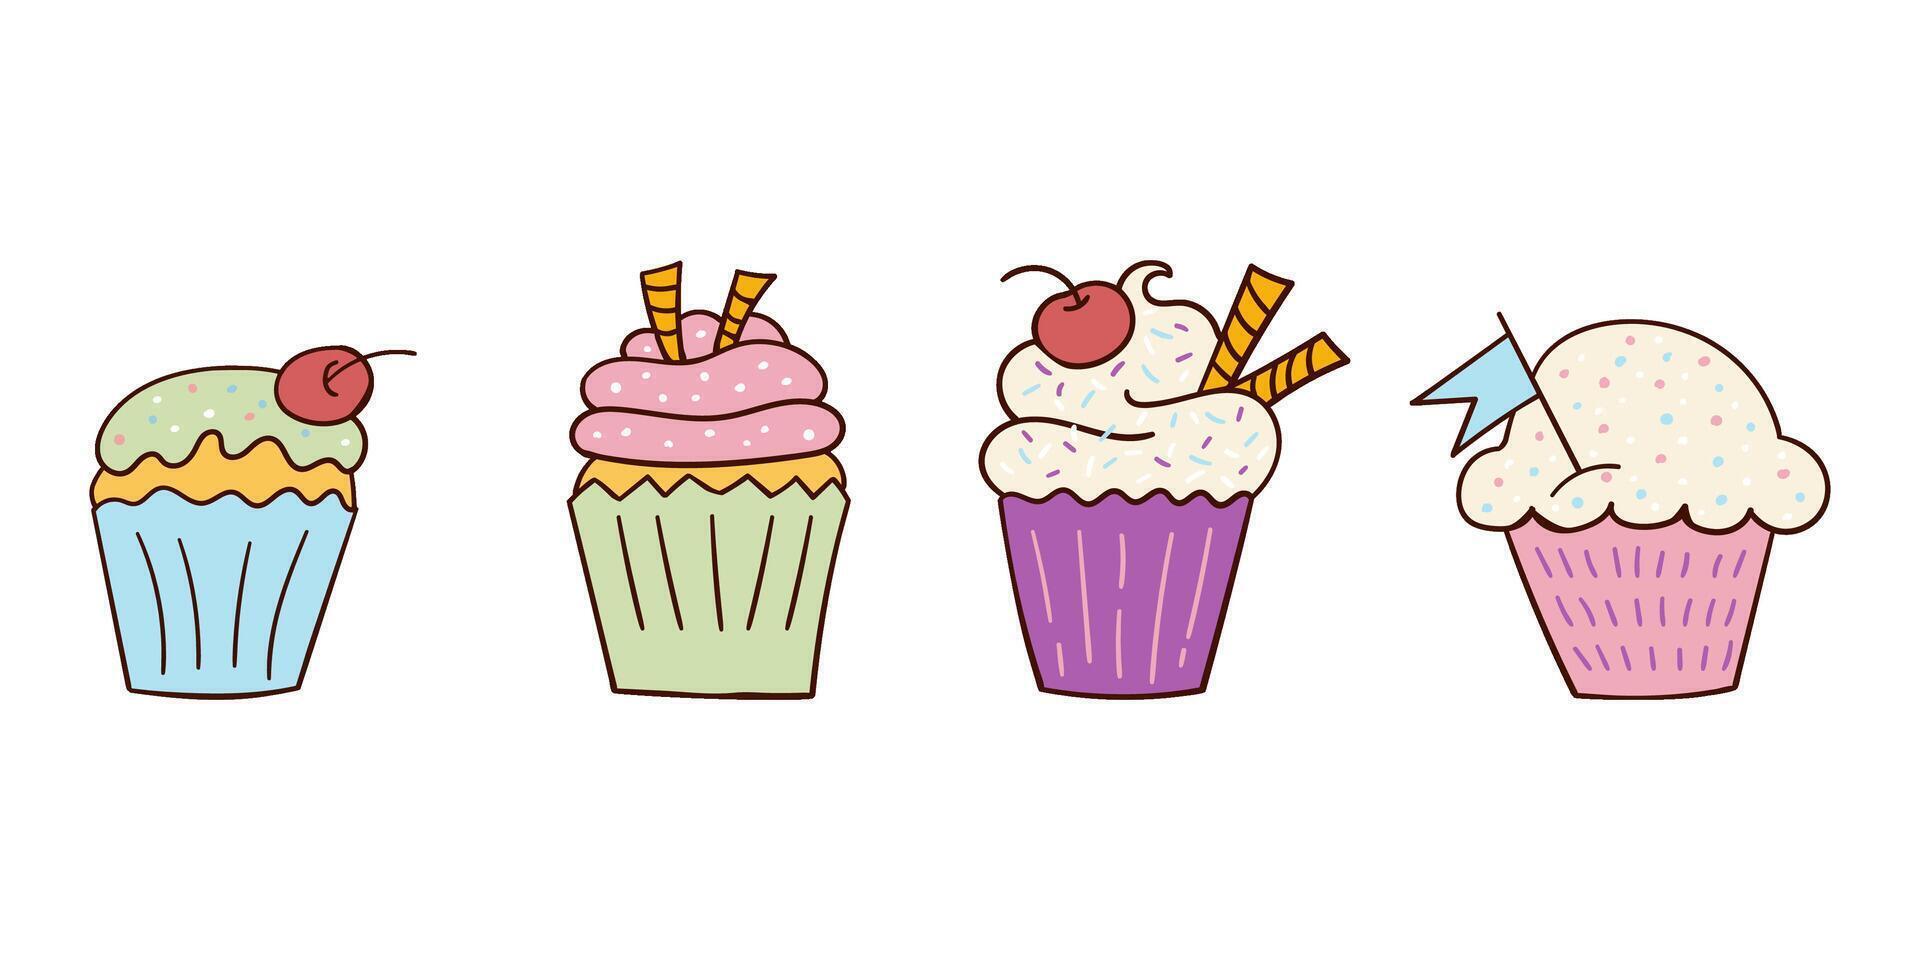 uppsättning av ljus färgad utsökt klotter stil cupcakes. illustration. freehand teckning, doodles. vektor